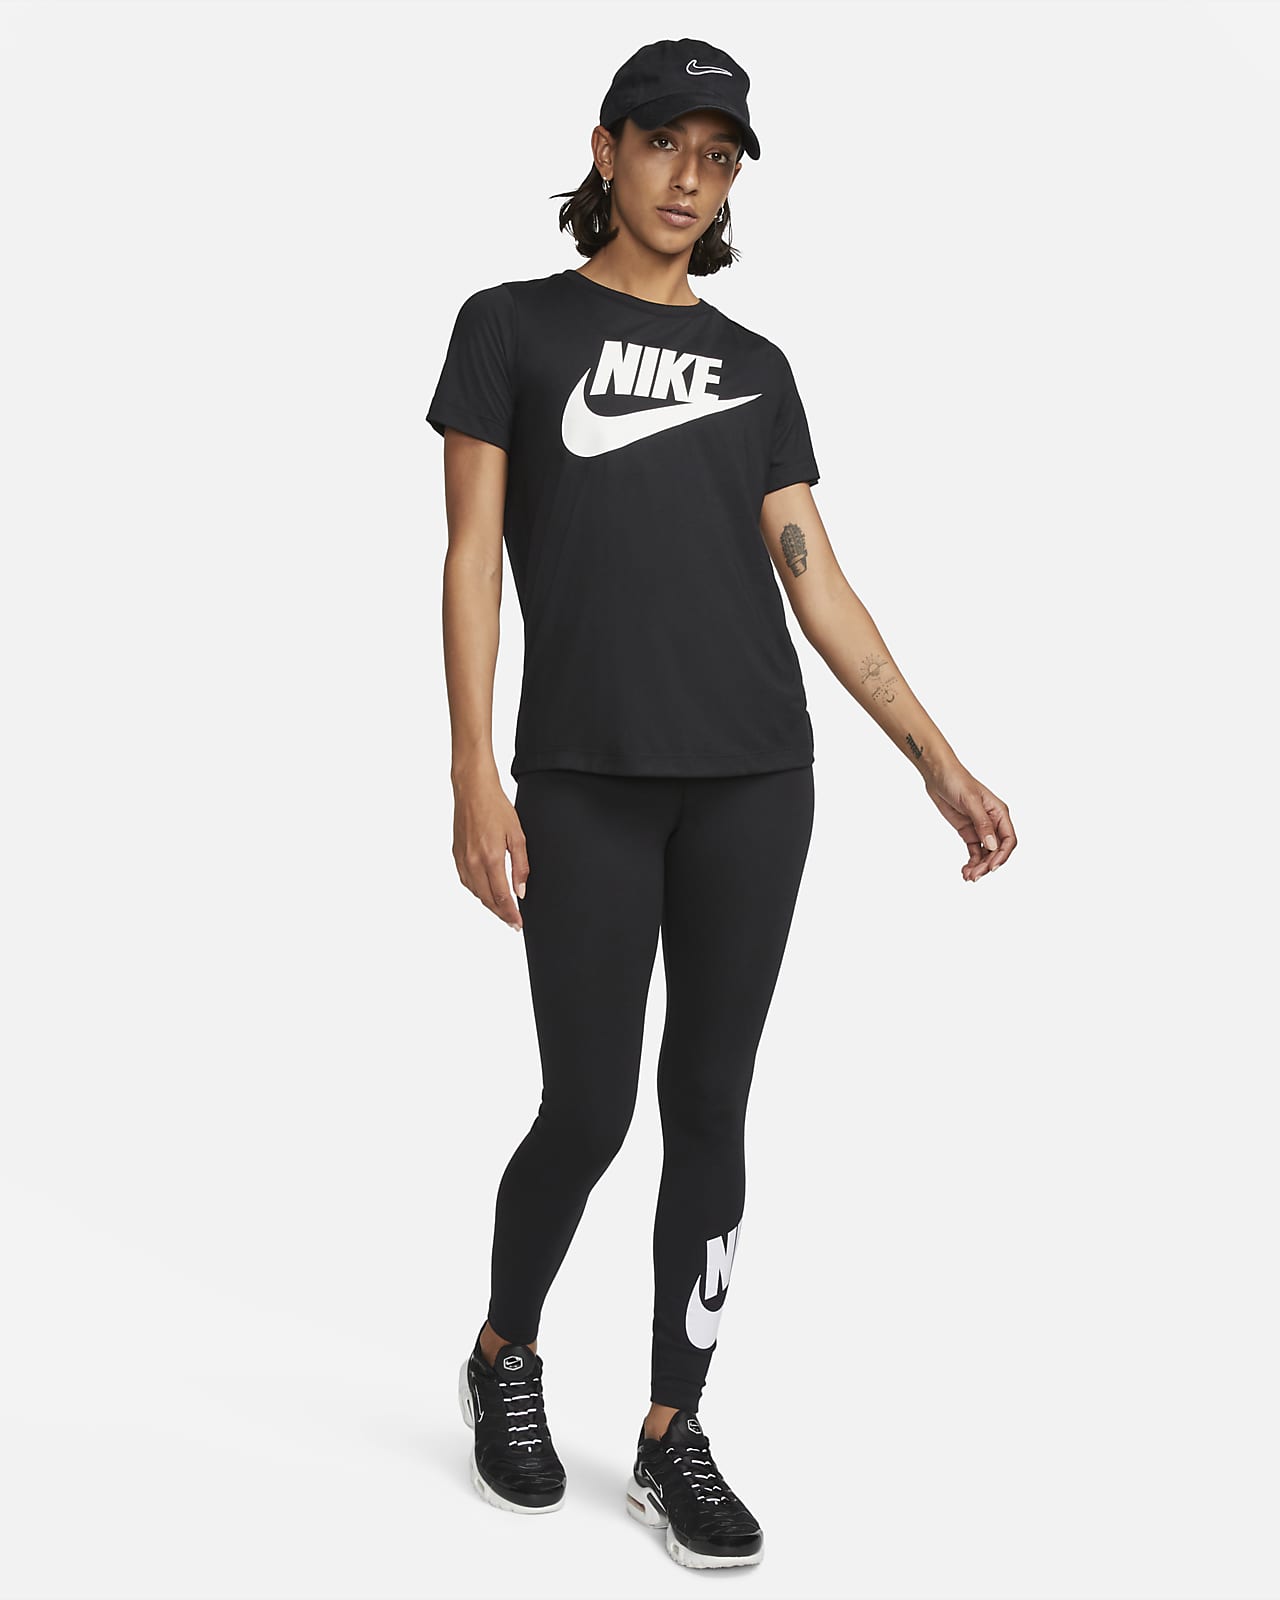 Jordan Sport Women's Leggings. Nike LU